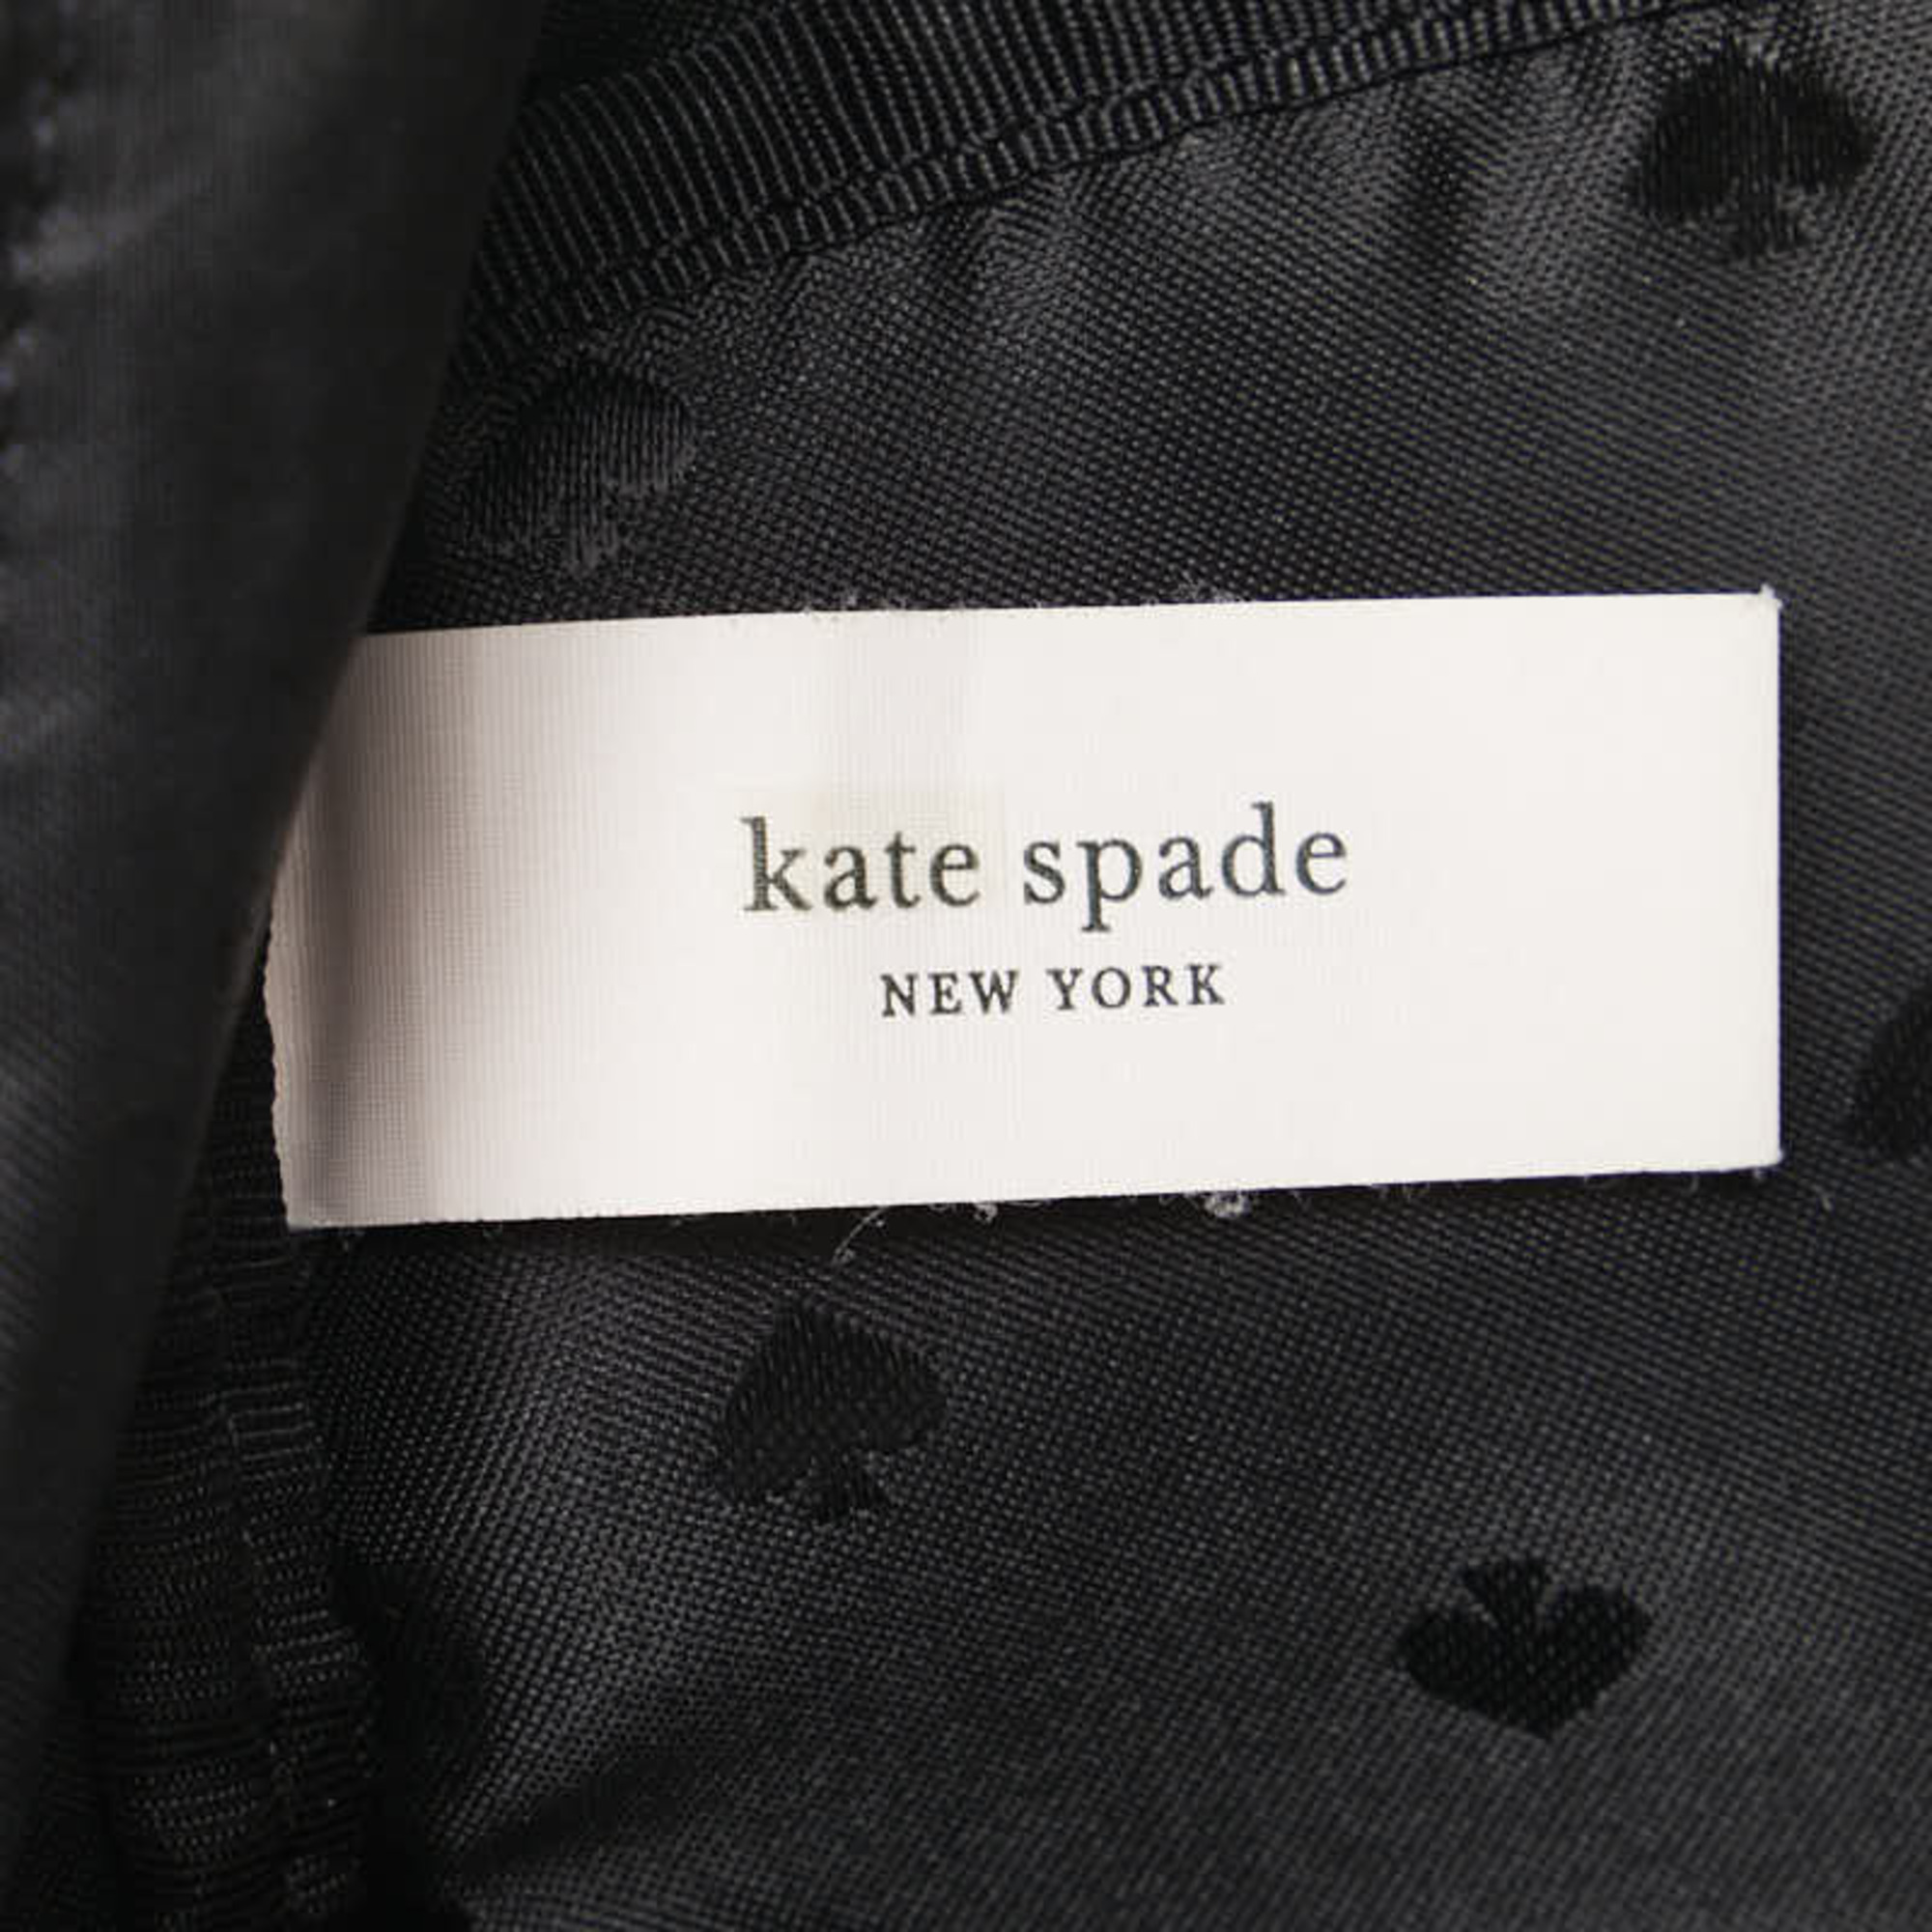 Kate Spade Backpack Black Gold Nylon Women's